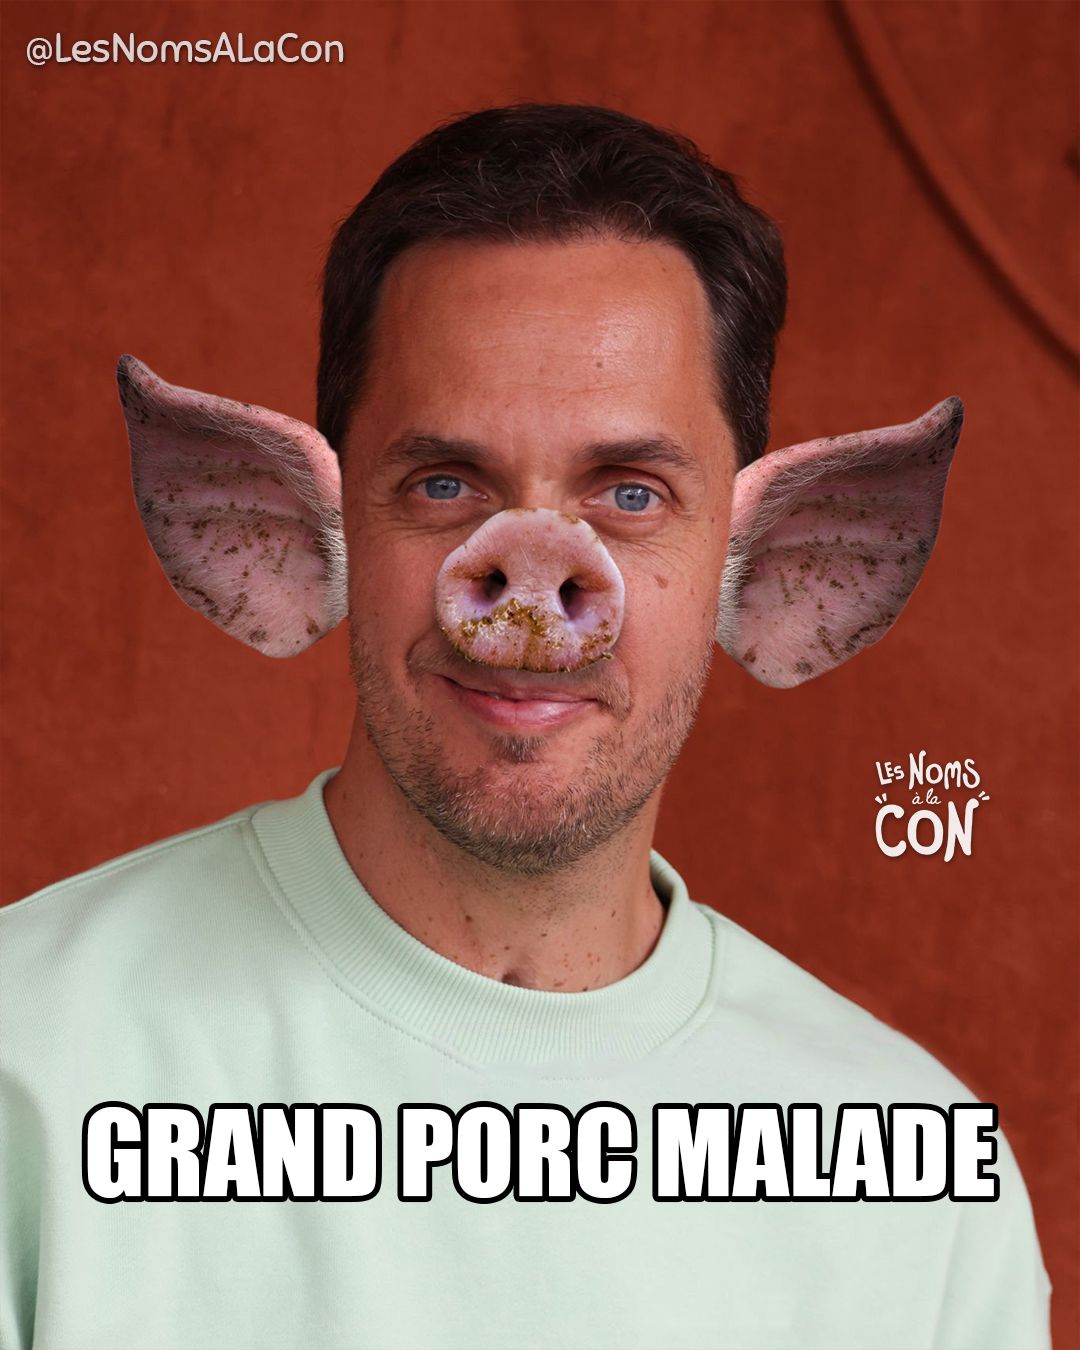 Grand Porc Malade